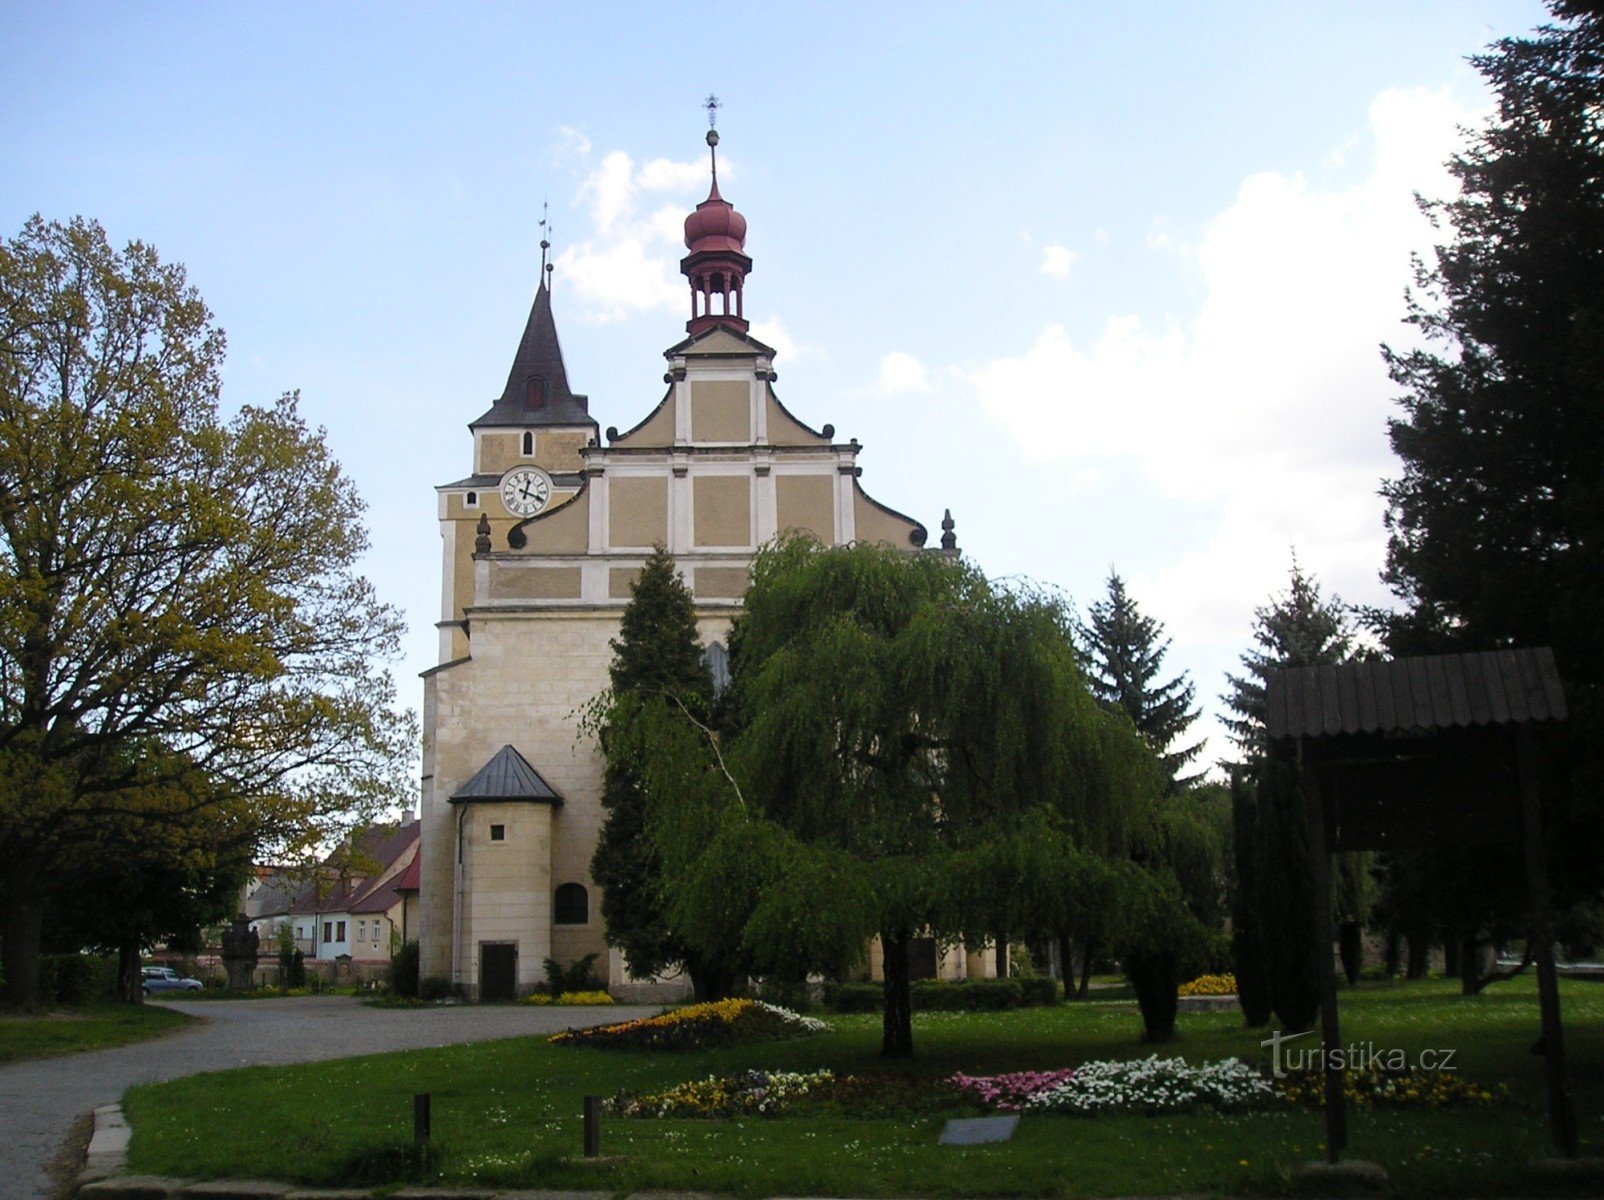 Frýdlant - Nhà thờ Tìm kiếm Thánh giá